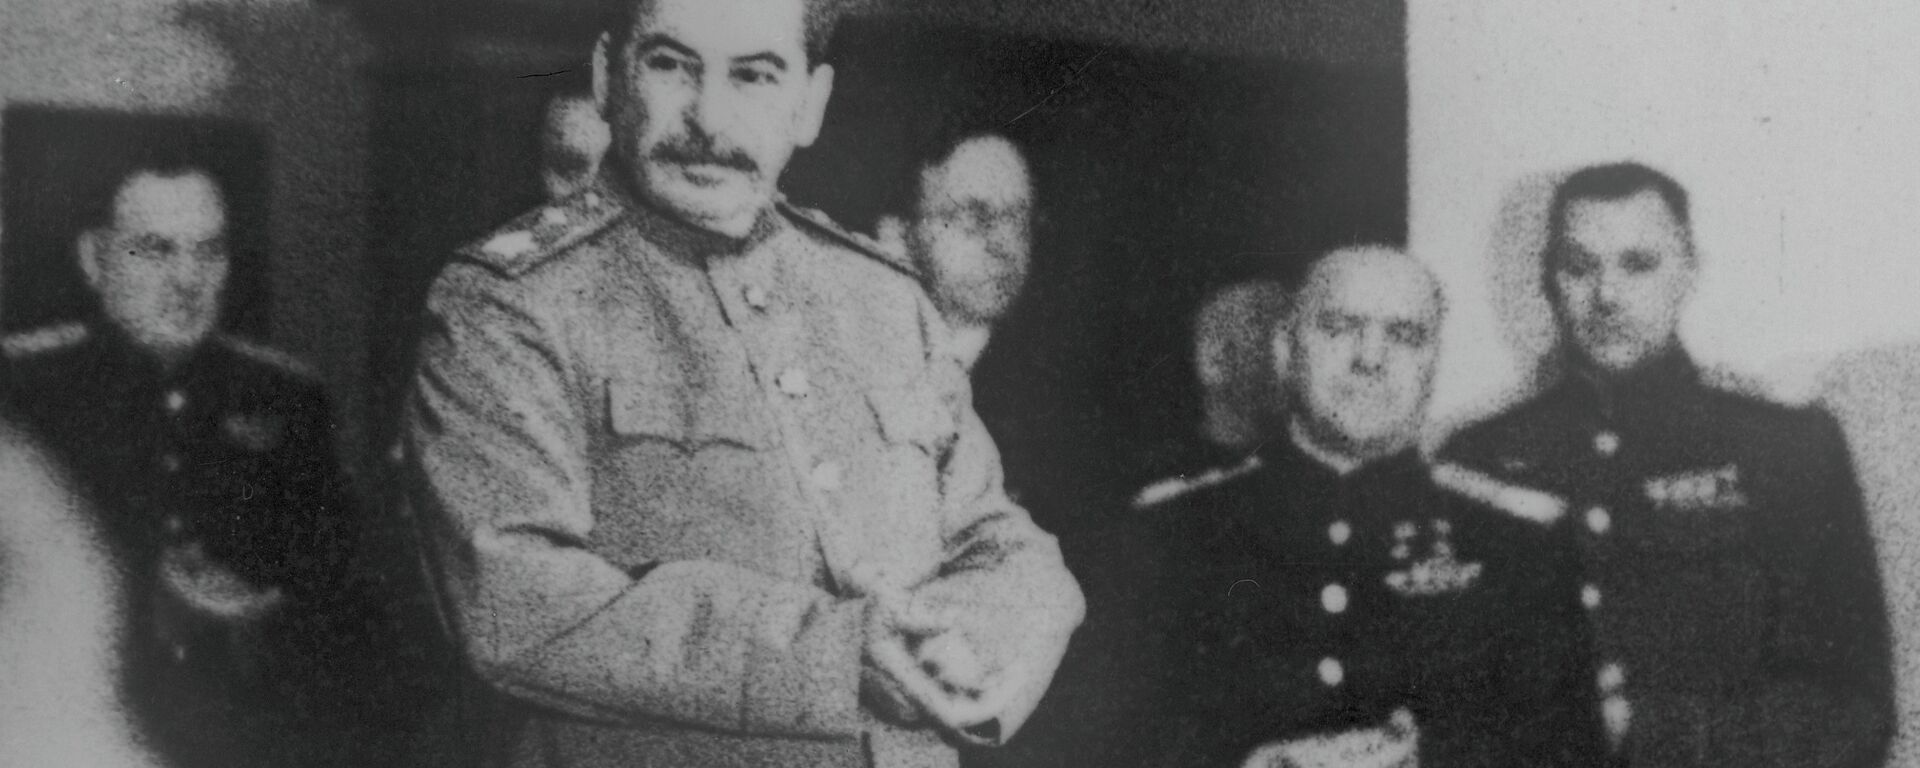 Иосиф Сталин. Архивное фото. - Sputnik Узбекистан, 1920, 23.12.2020